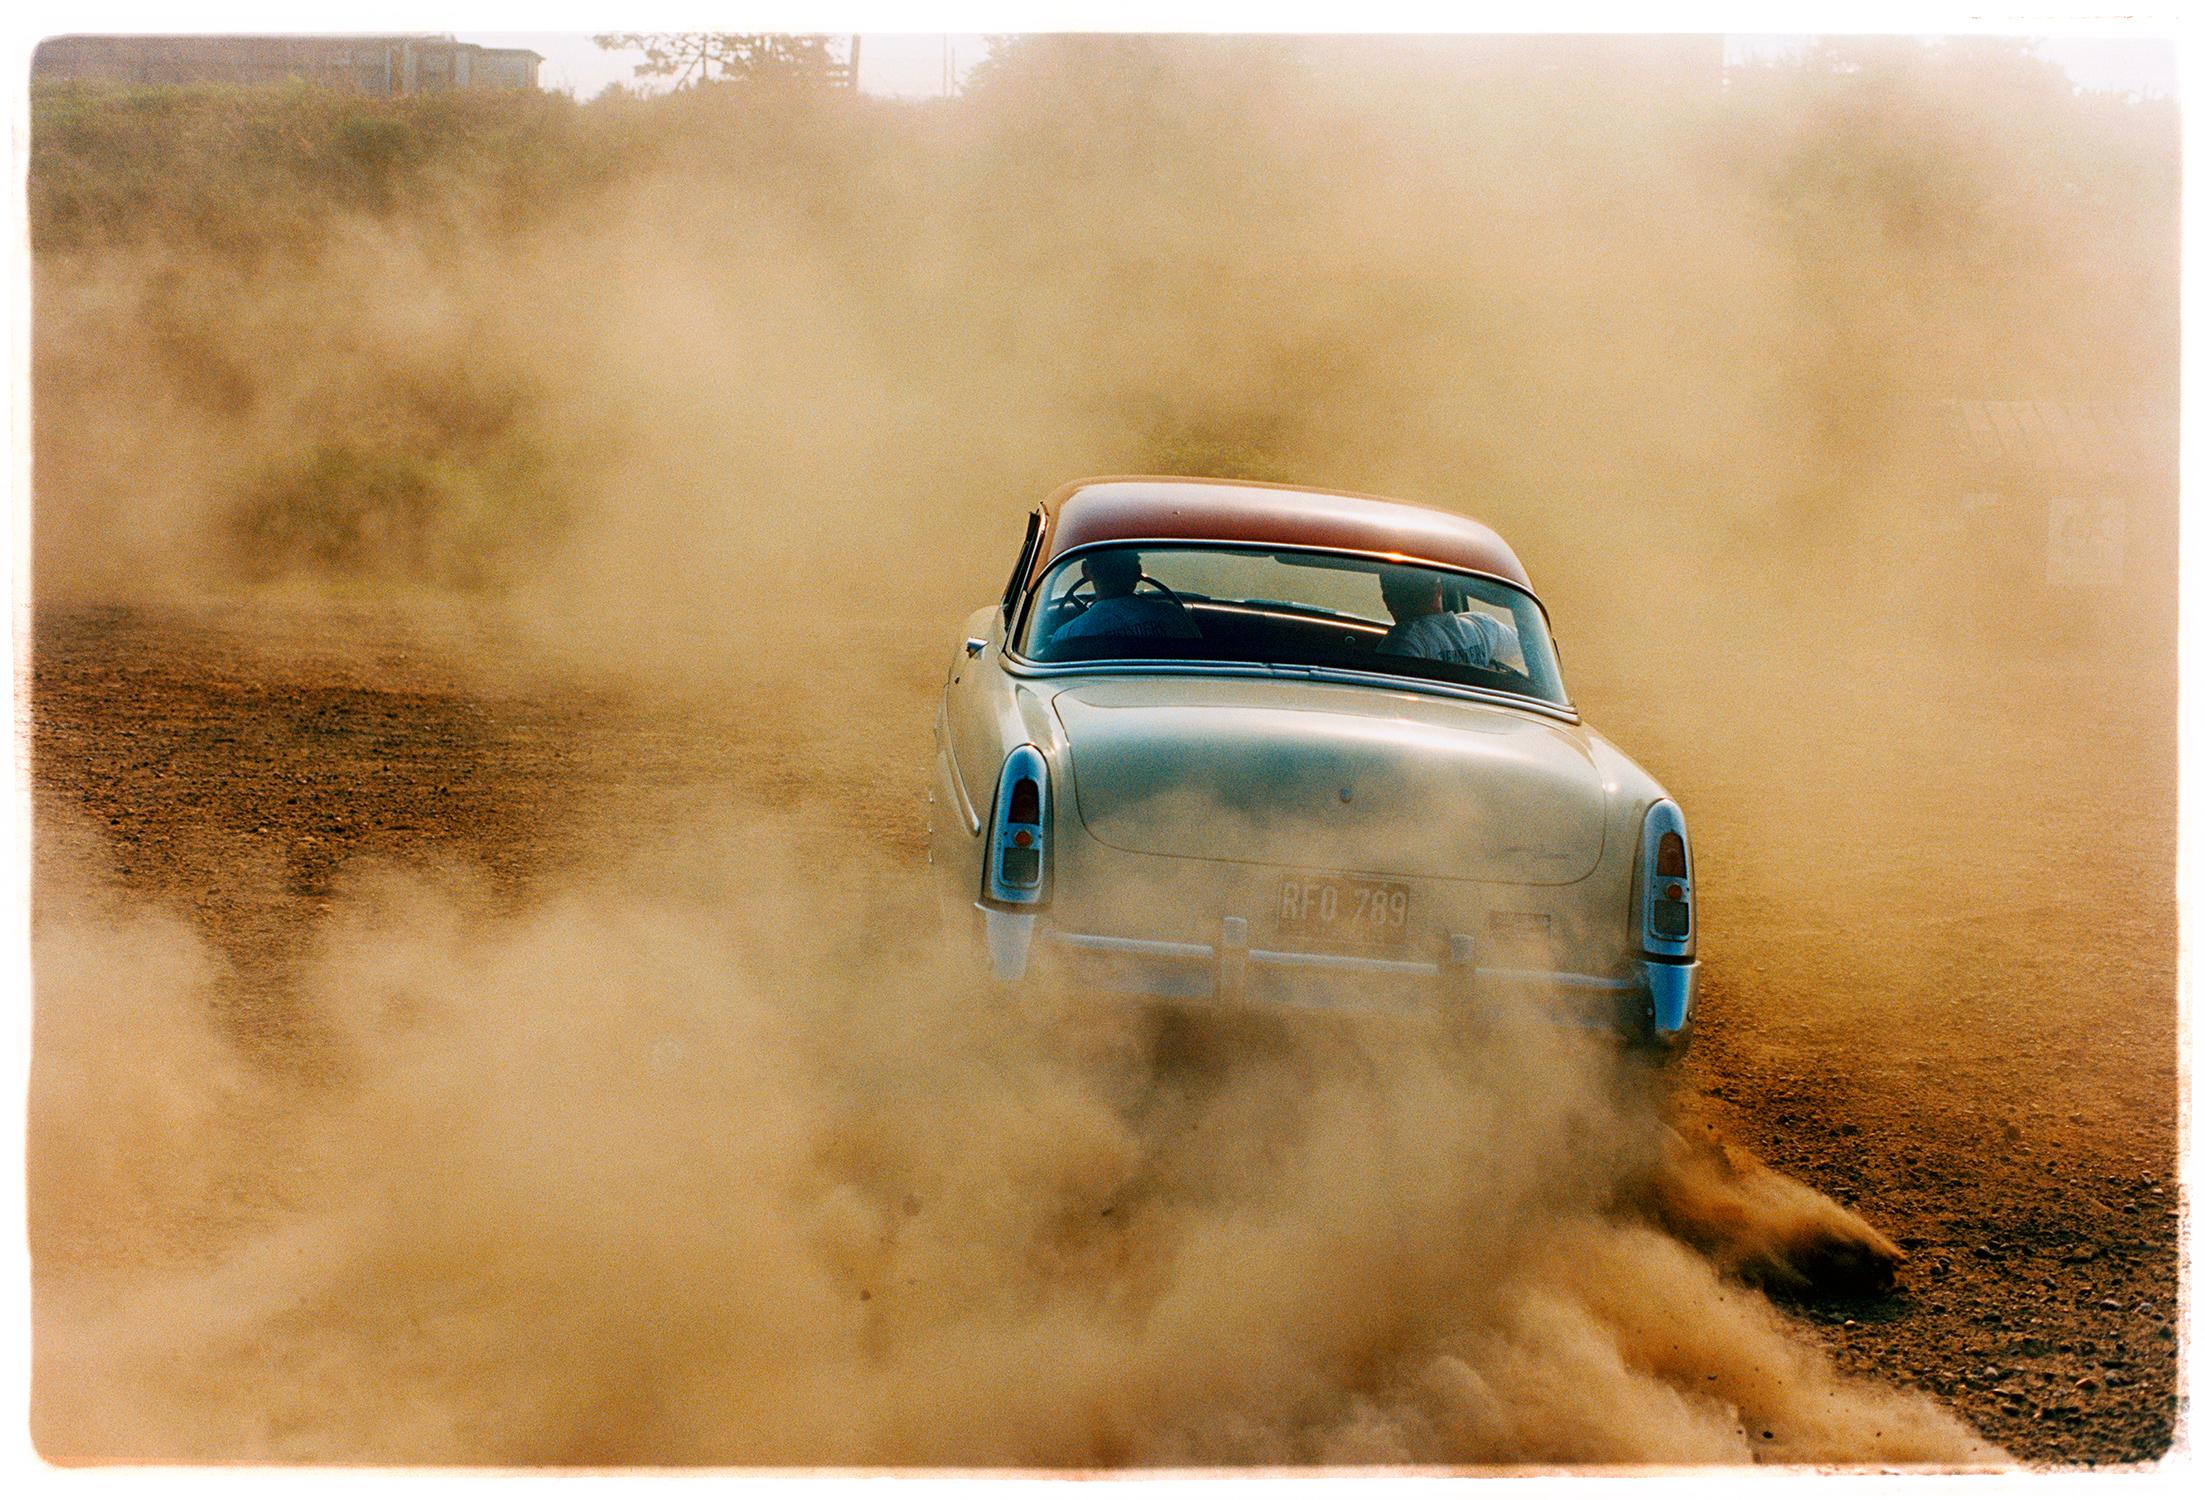 Richard Heeps Landscape Photograph – Mercury in the Dust, Hemsby, Norfolk – Auto auf einer Strandfarbenfotografie